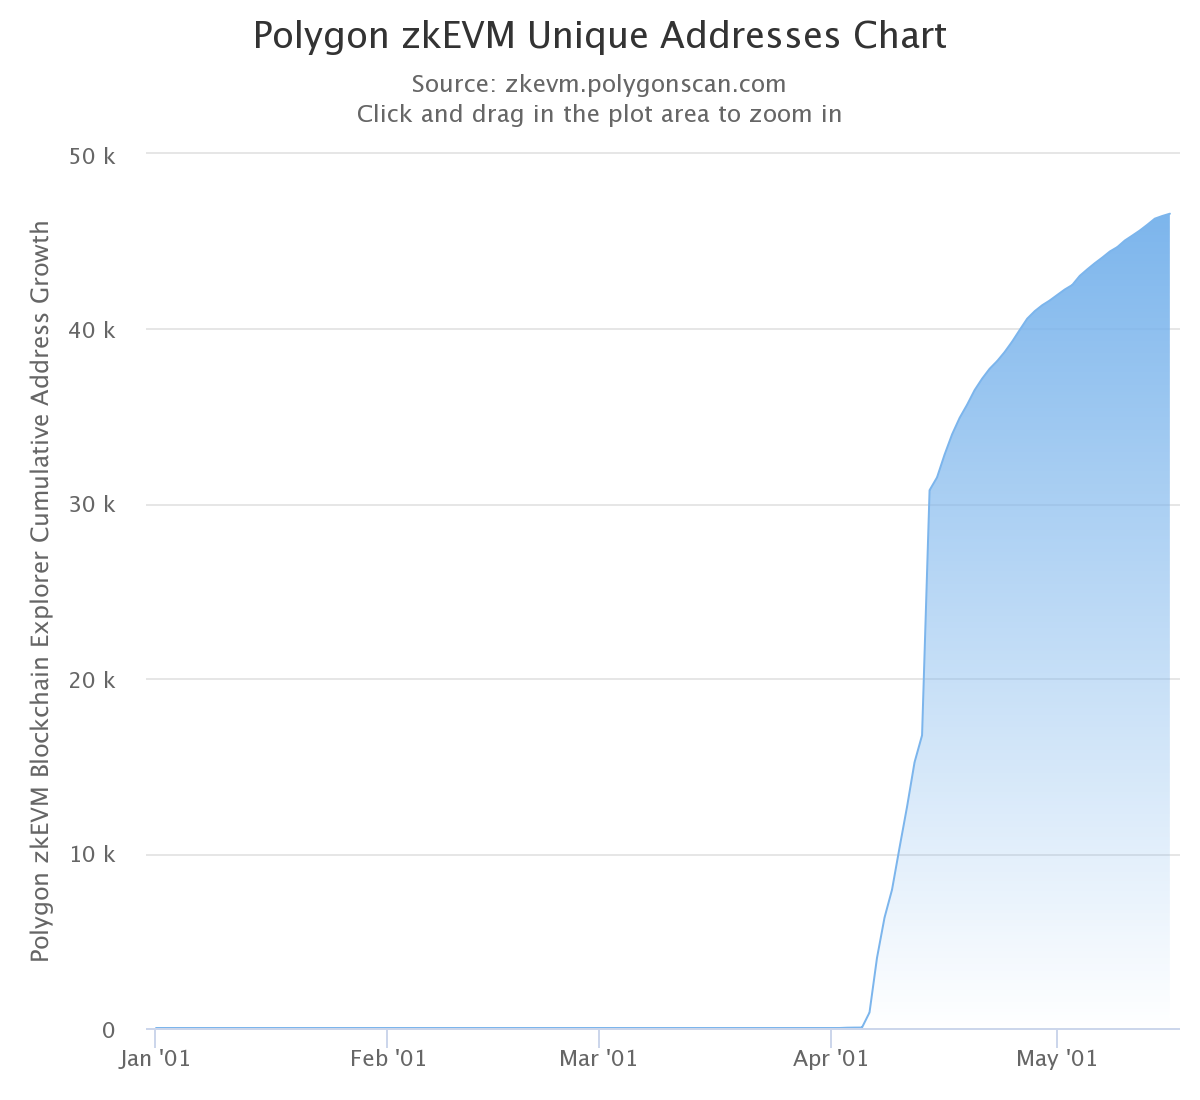 Polygon zkEVM unique addresses chart